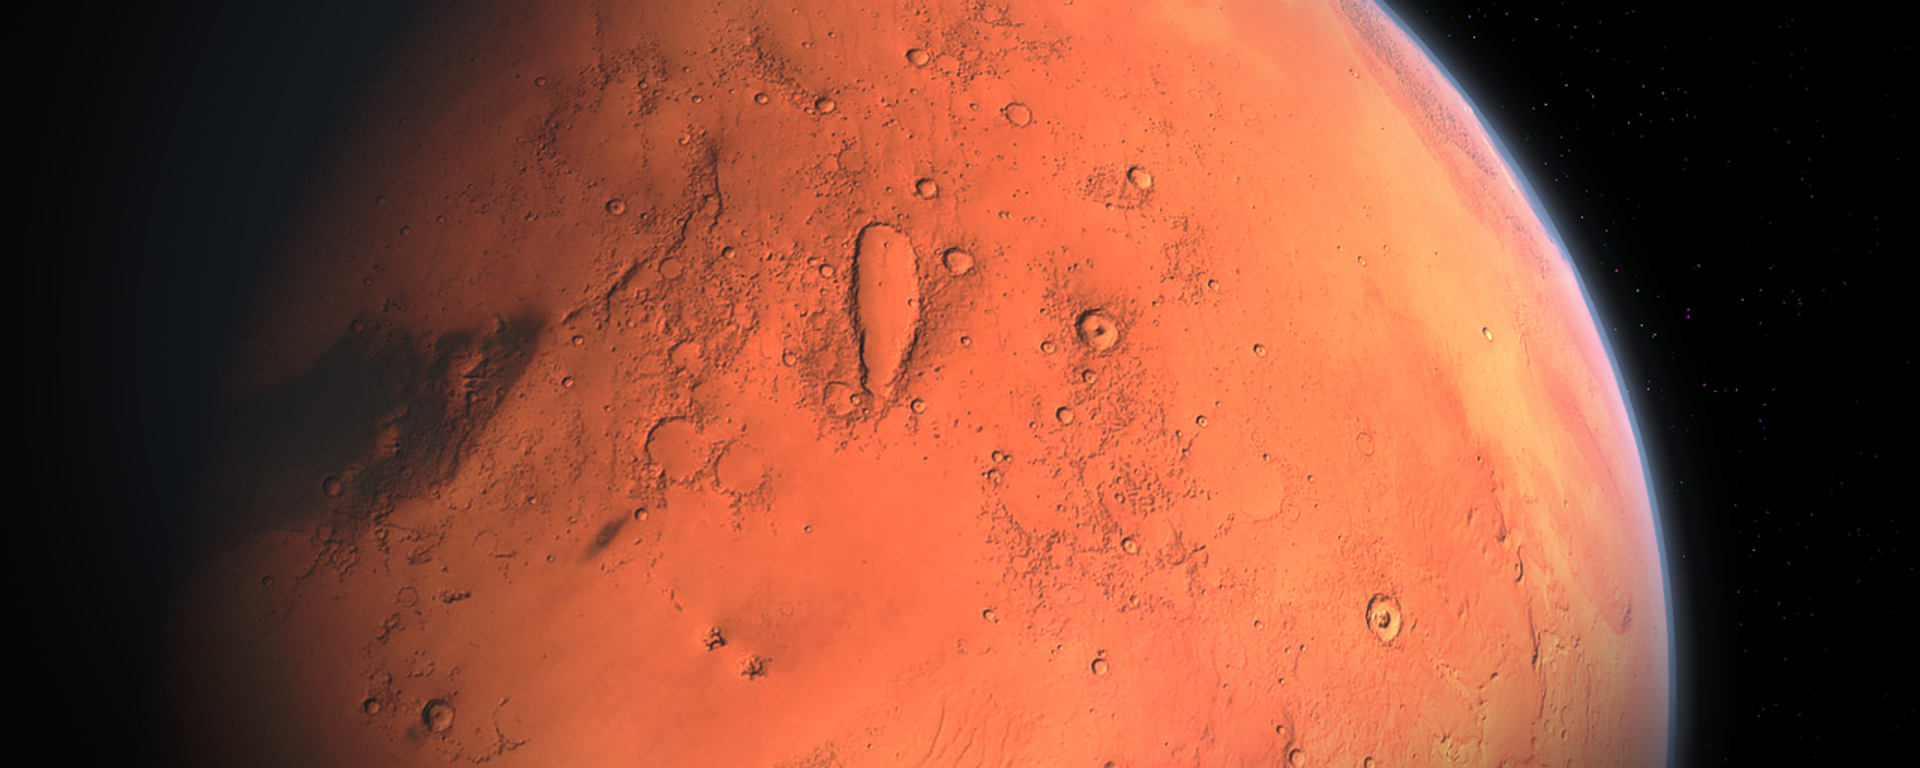 Marte (imagen referencial) - Sputnik Mundo, 1920, 24.10.2020